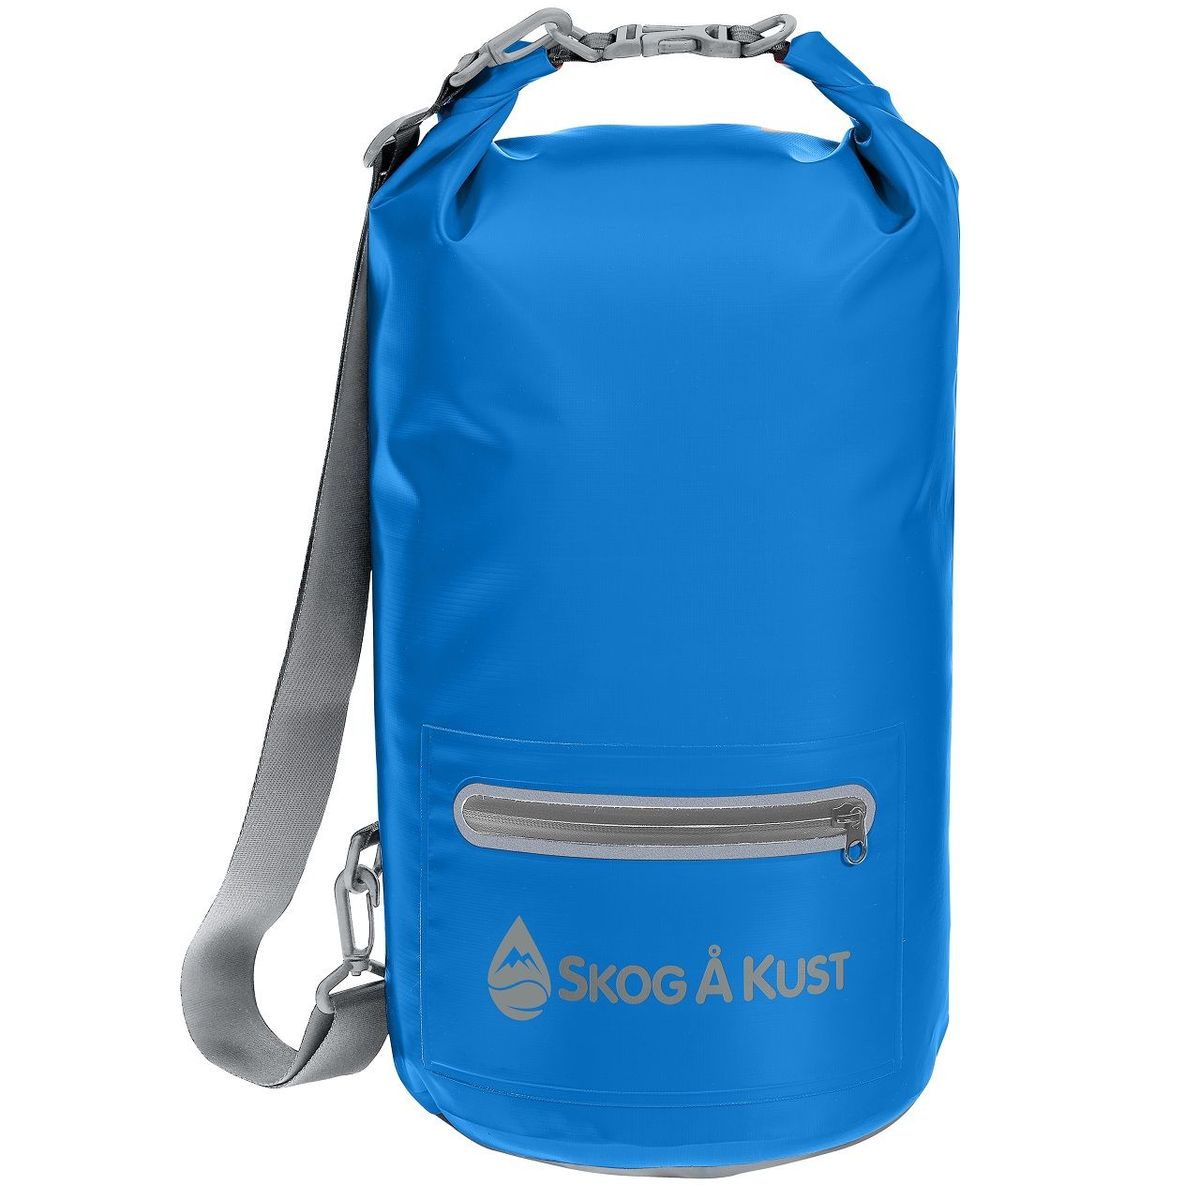 Skog A Kust DrySak Dry Bag - Aspire Adventure Equipment